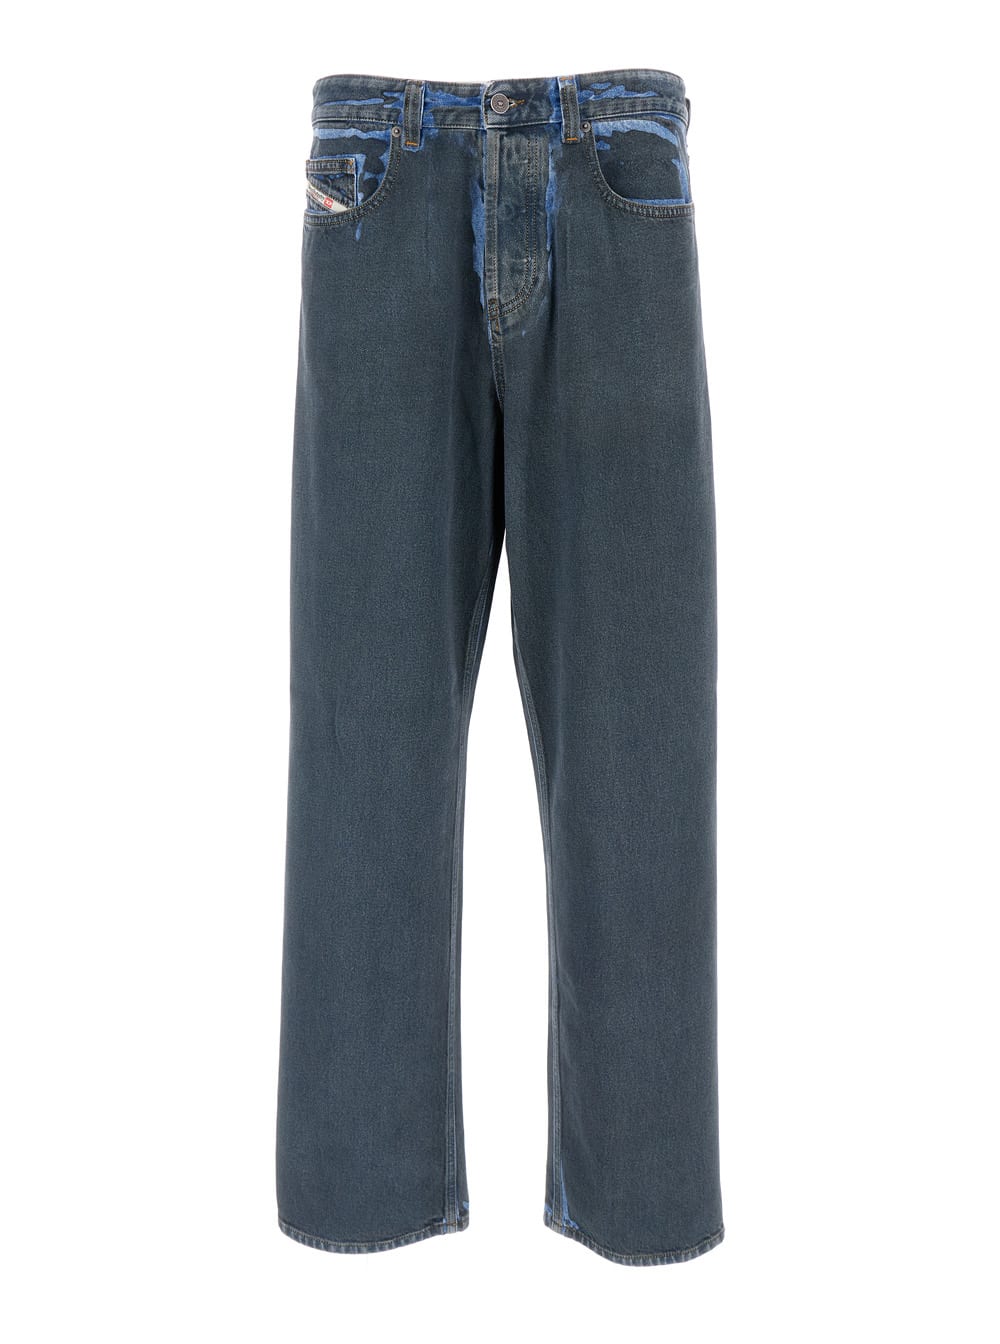 Shop Diesel Blue Denim Straight Leg Jeans In Cotton Man